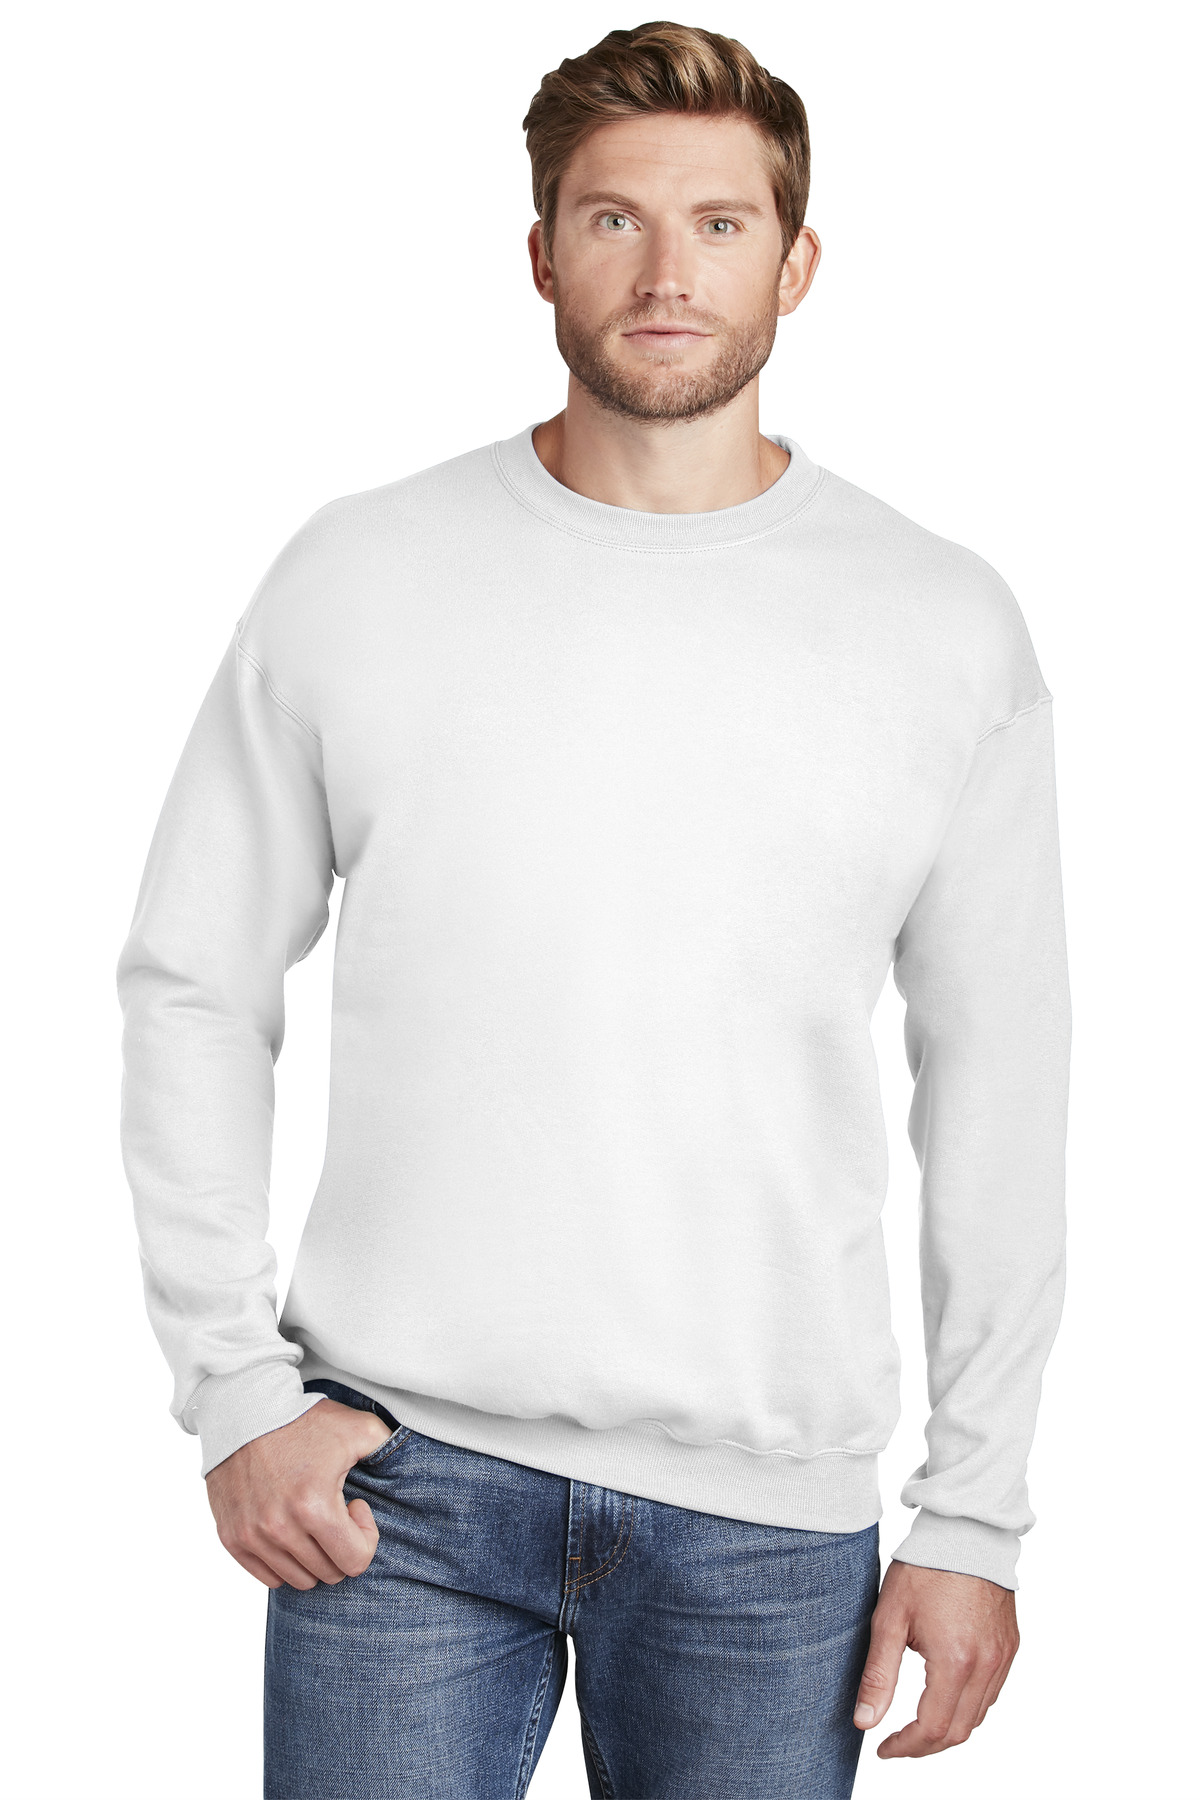 Hanes Ultimate Cotton - Crewneck Sweatshirt-Hanes